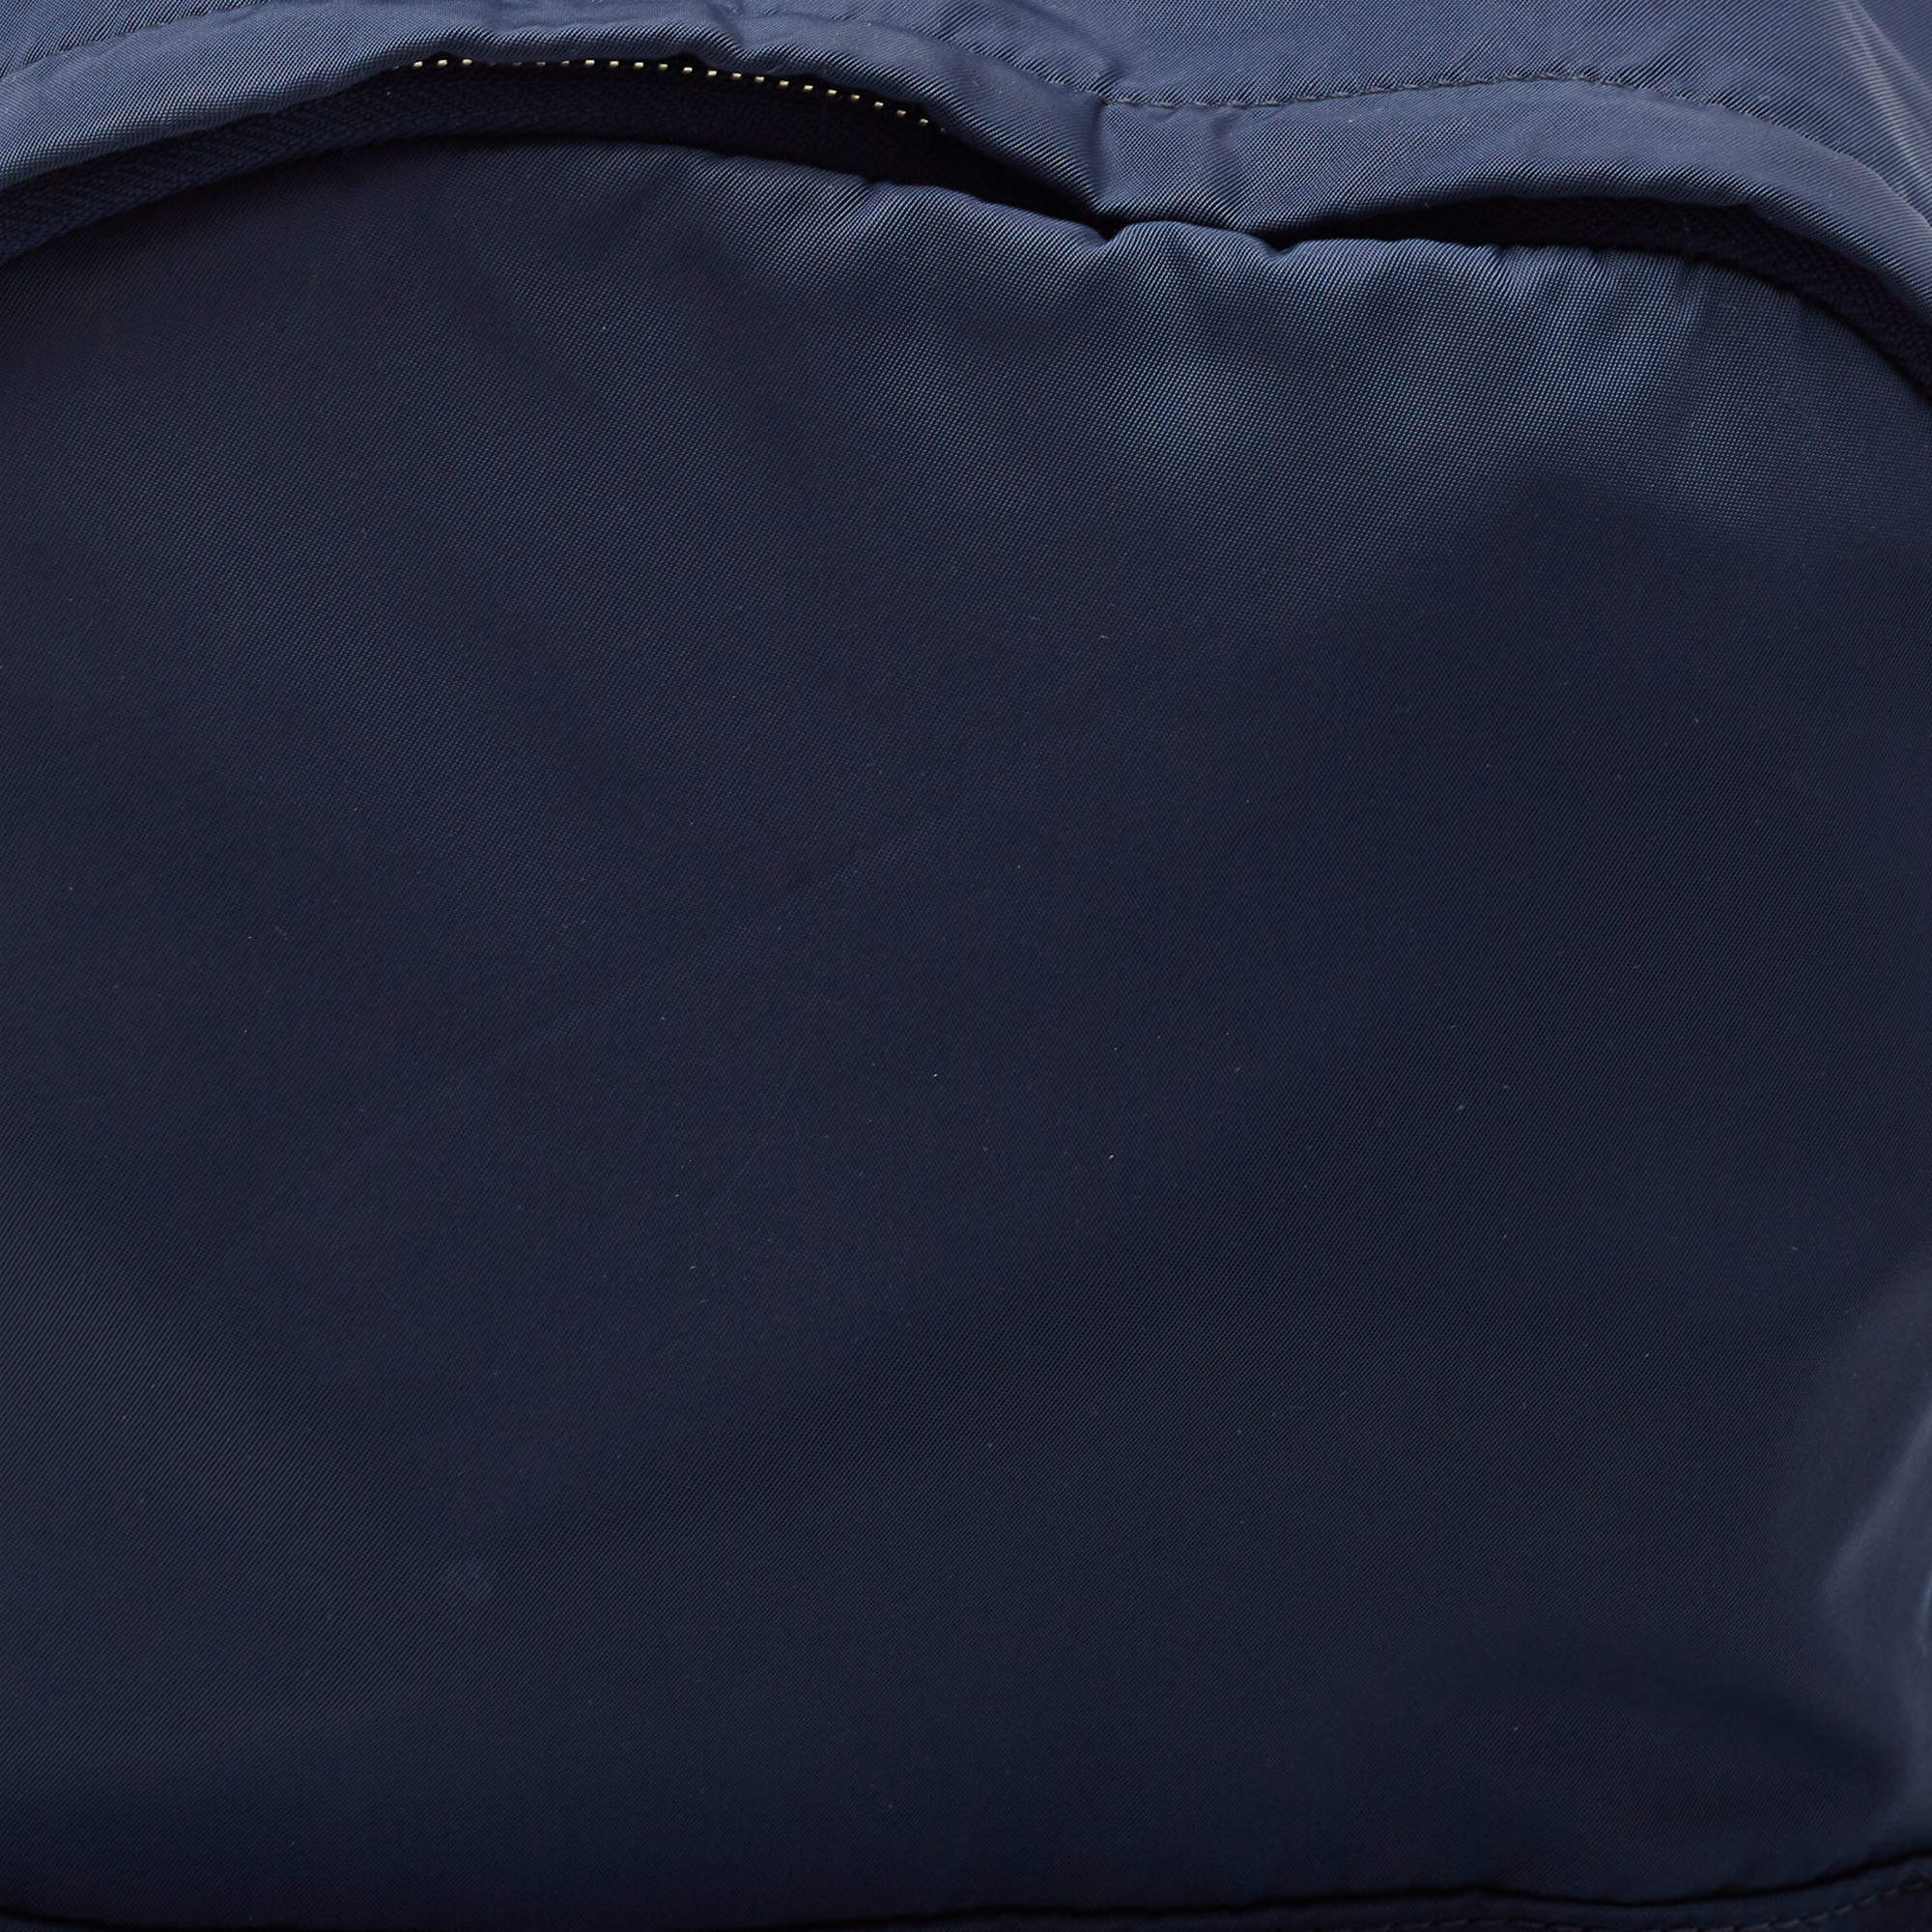 Men's Designer Backpacks, Michael Kors